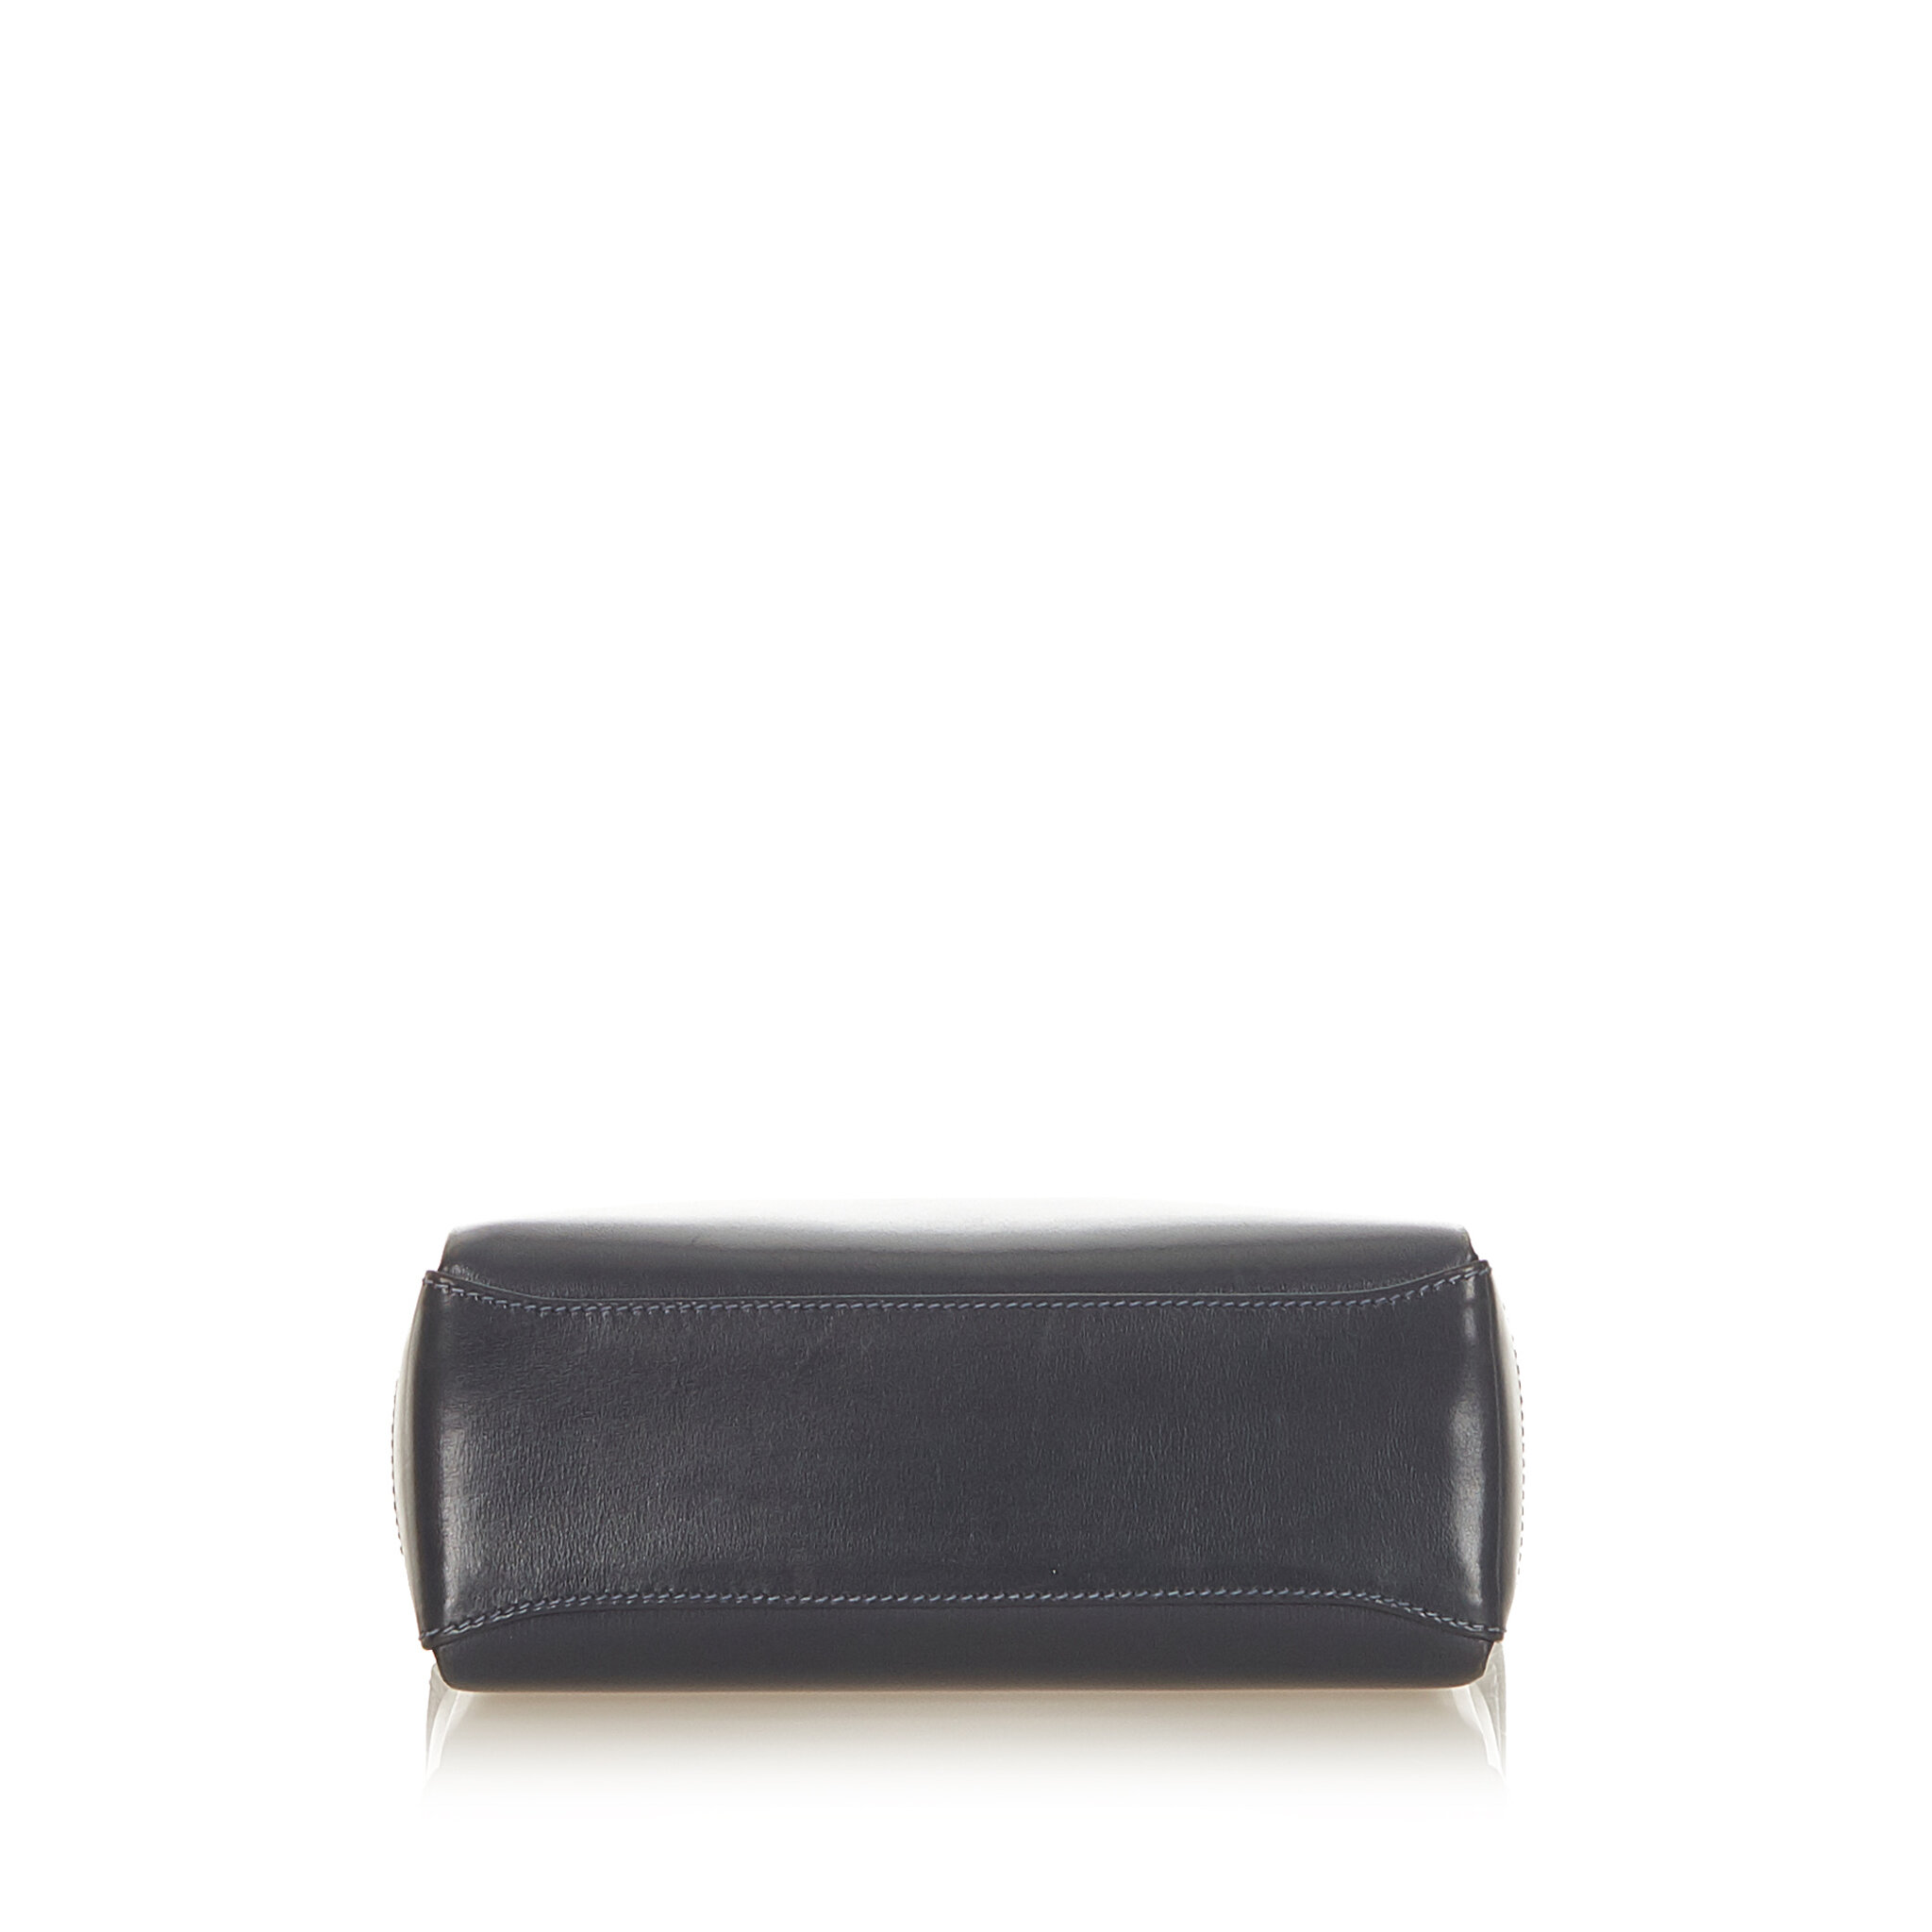 Gucci Leather Shoulder Bag, black